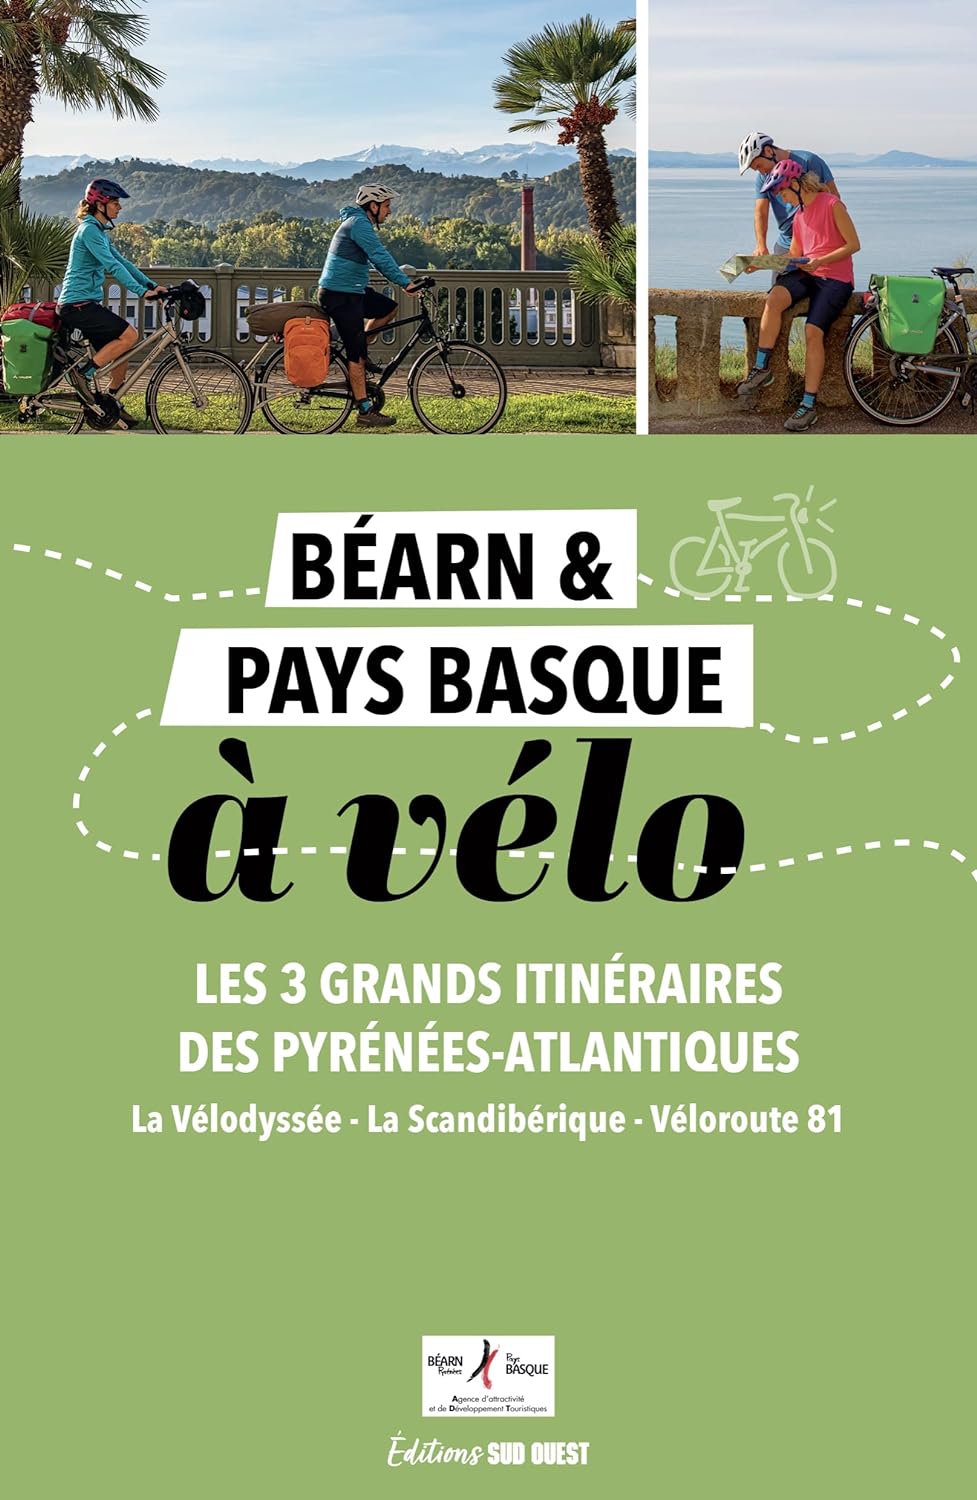 Guide cycliste - Béarn et Pays basque à vélo, les 3 grands itinéraires des Pyrénées-Atlantiques | Sud Ouest